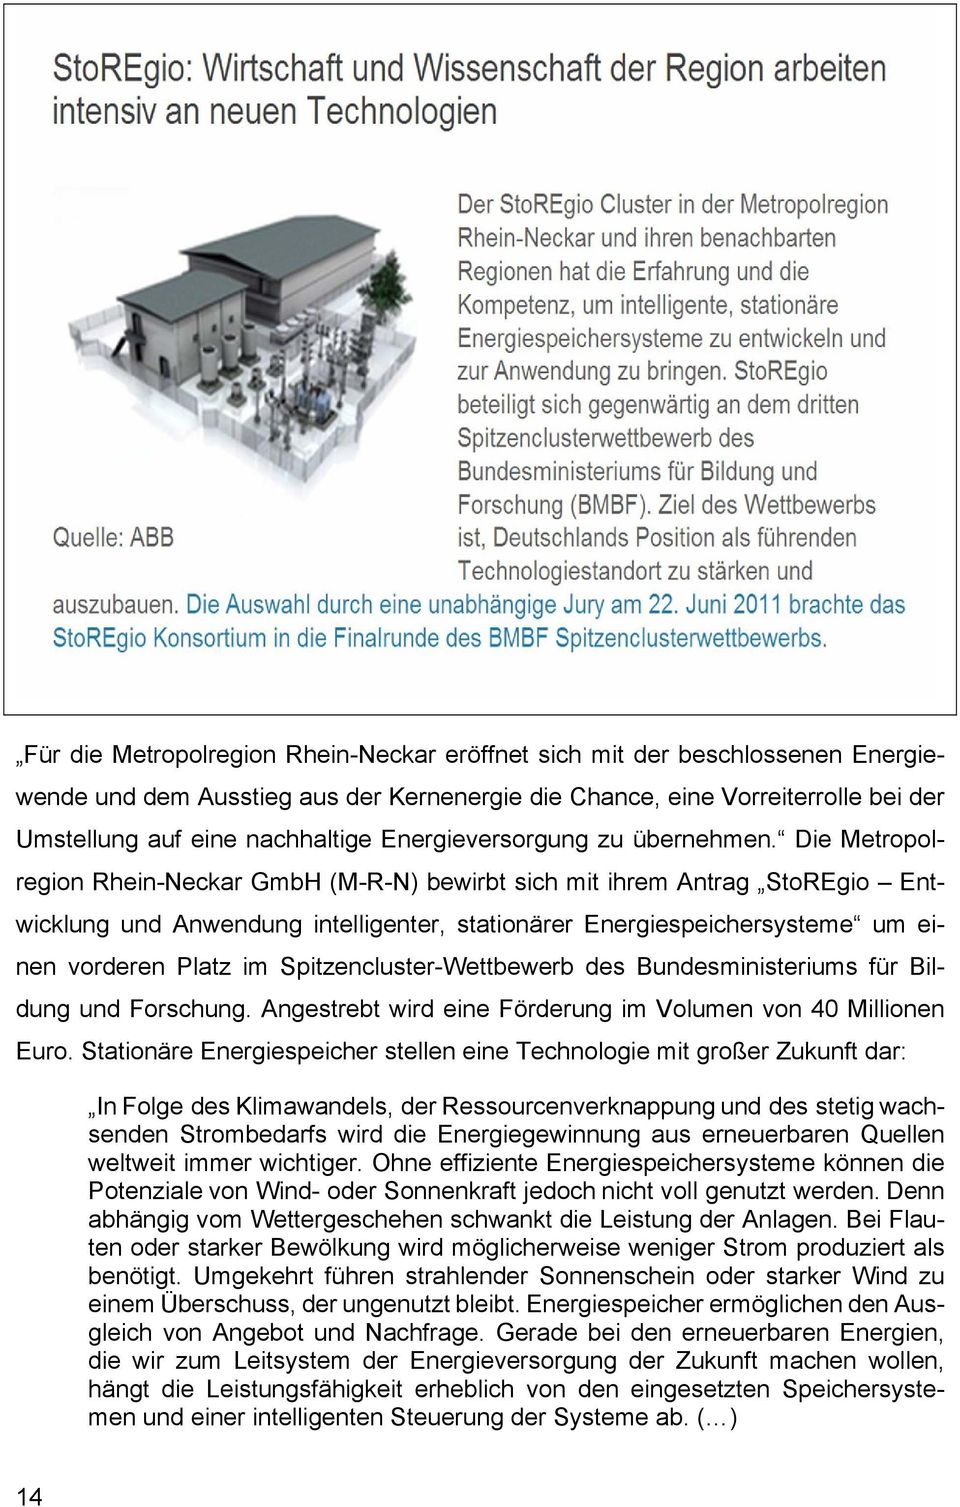 Die Metropolregion Rhein-Neckar GmbH (M-R-N) bewirbt sich mit ihrem Antrag StoREgio Entwicklung und Anwendung intelligenter, stationärer Energiespeichersysteme um einen vorderen Platz im